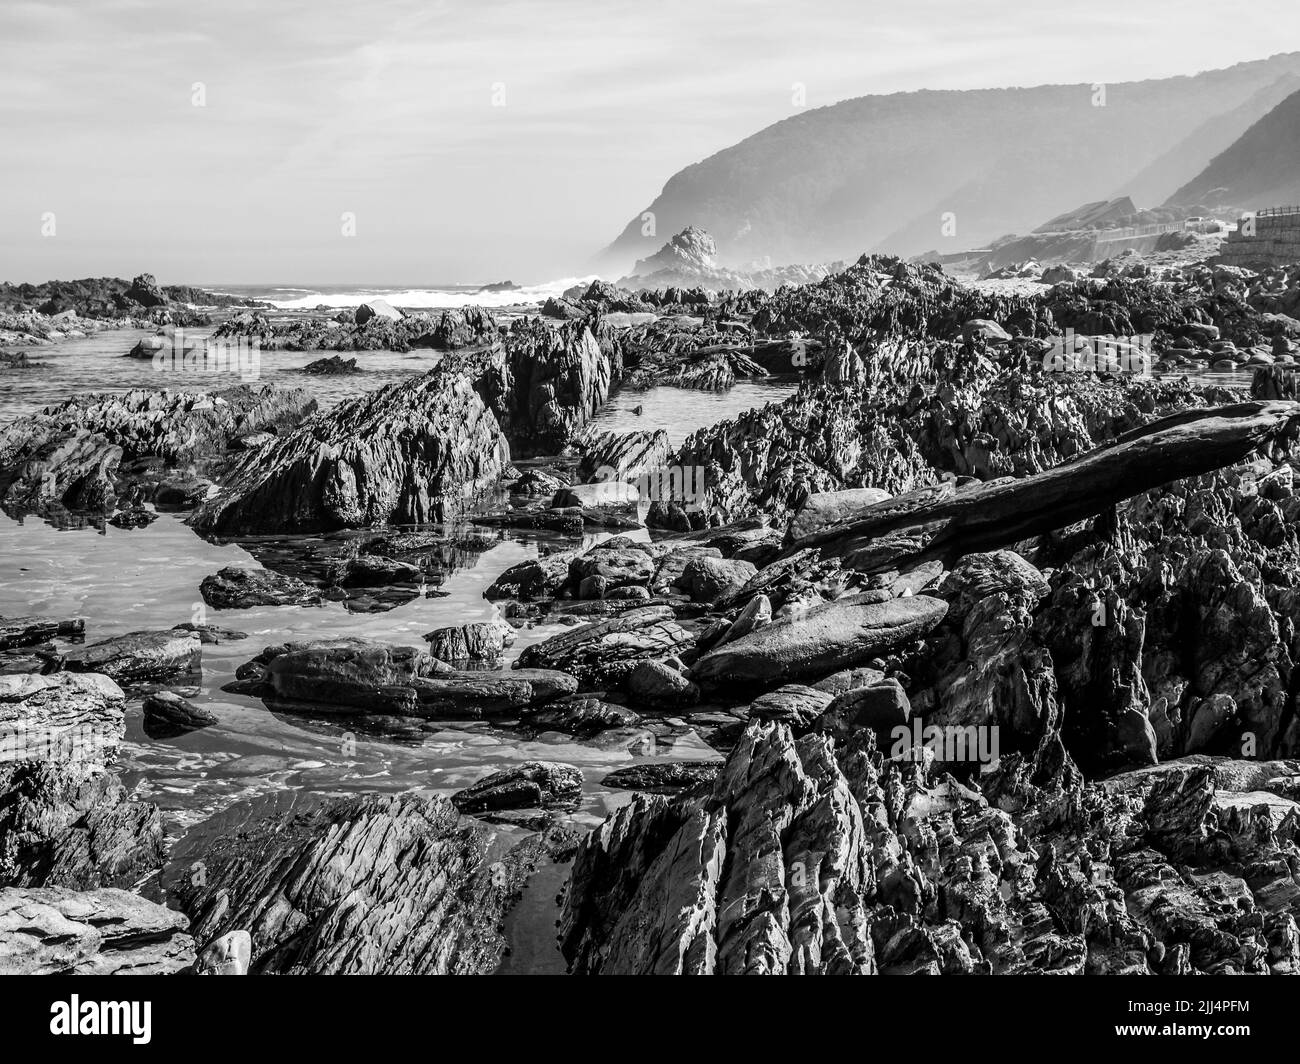 La escarpada costa rocosa a lo largo de la costa sur de Sudáfrica, con las montañas Tsitsikamma elevándose en el fondo. Foto de stock